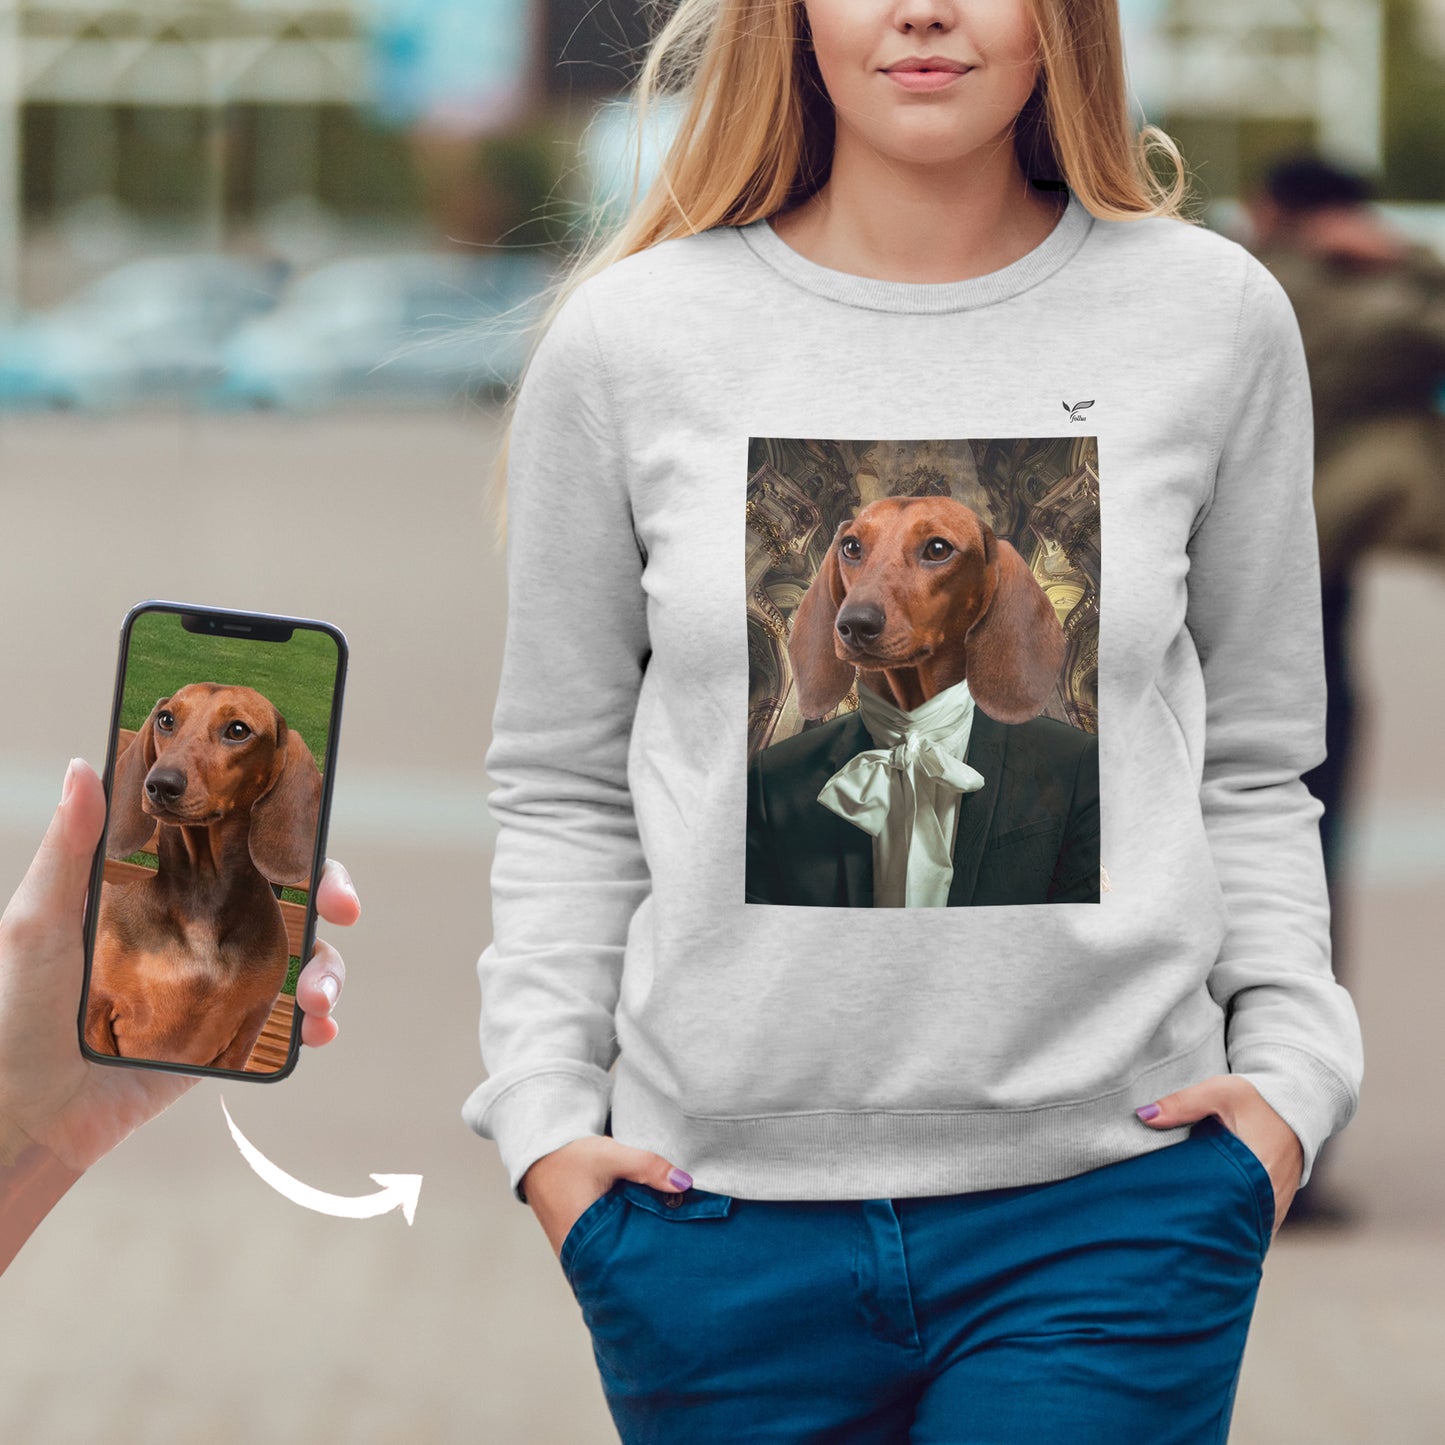 L'Ambassadeur - Sweatshirt personnalisé avec la photo de votre animal